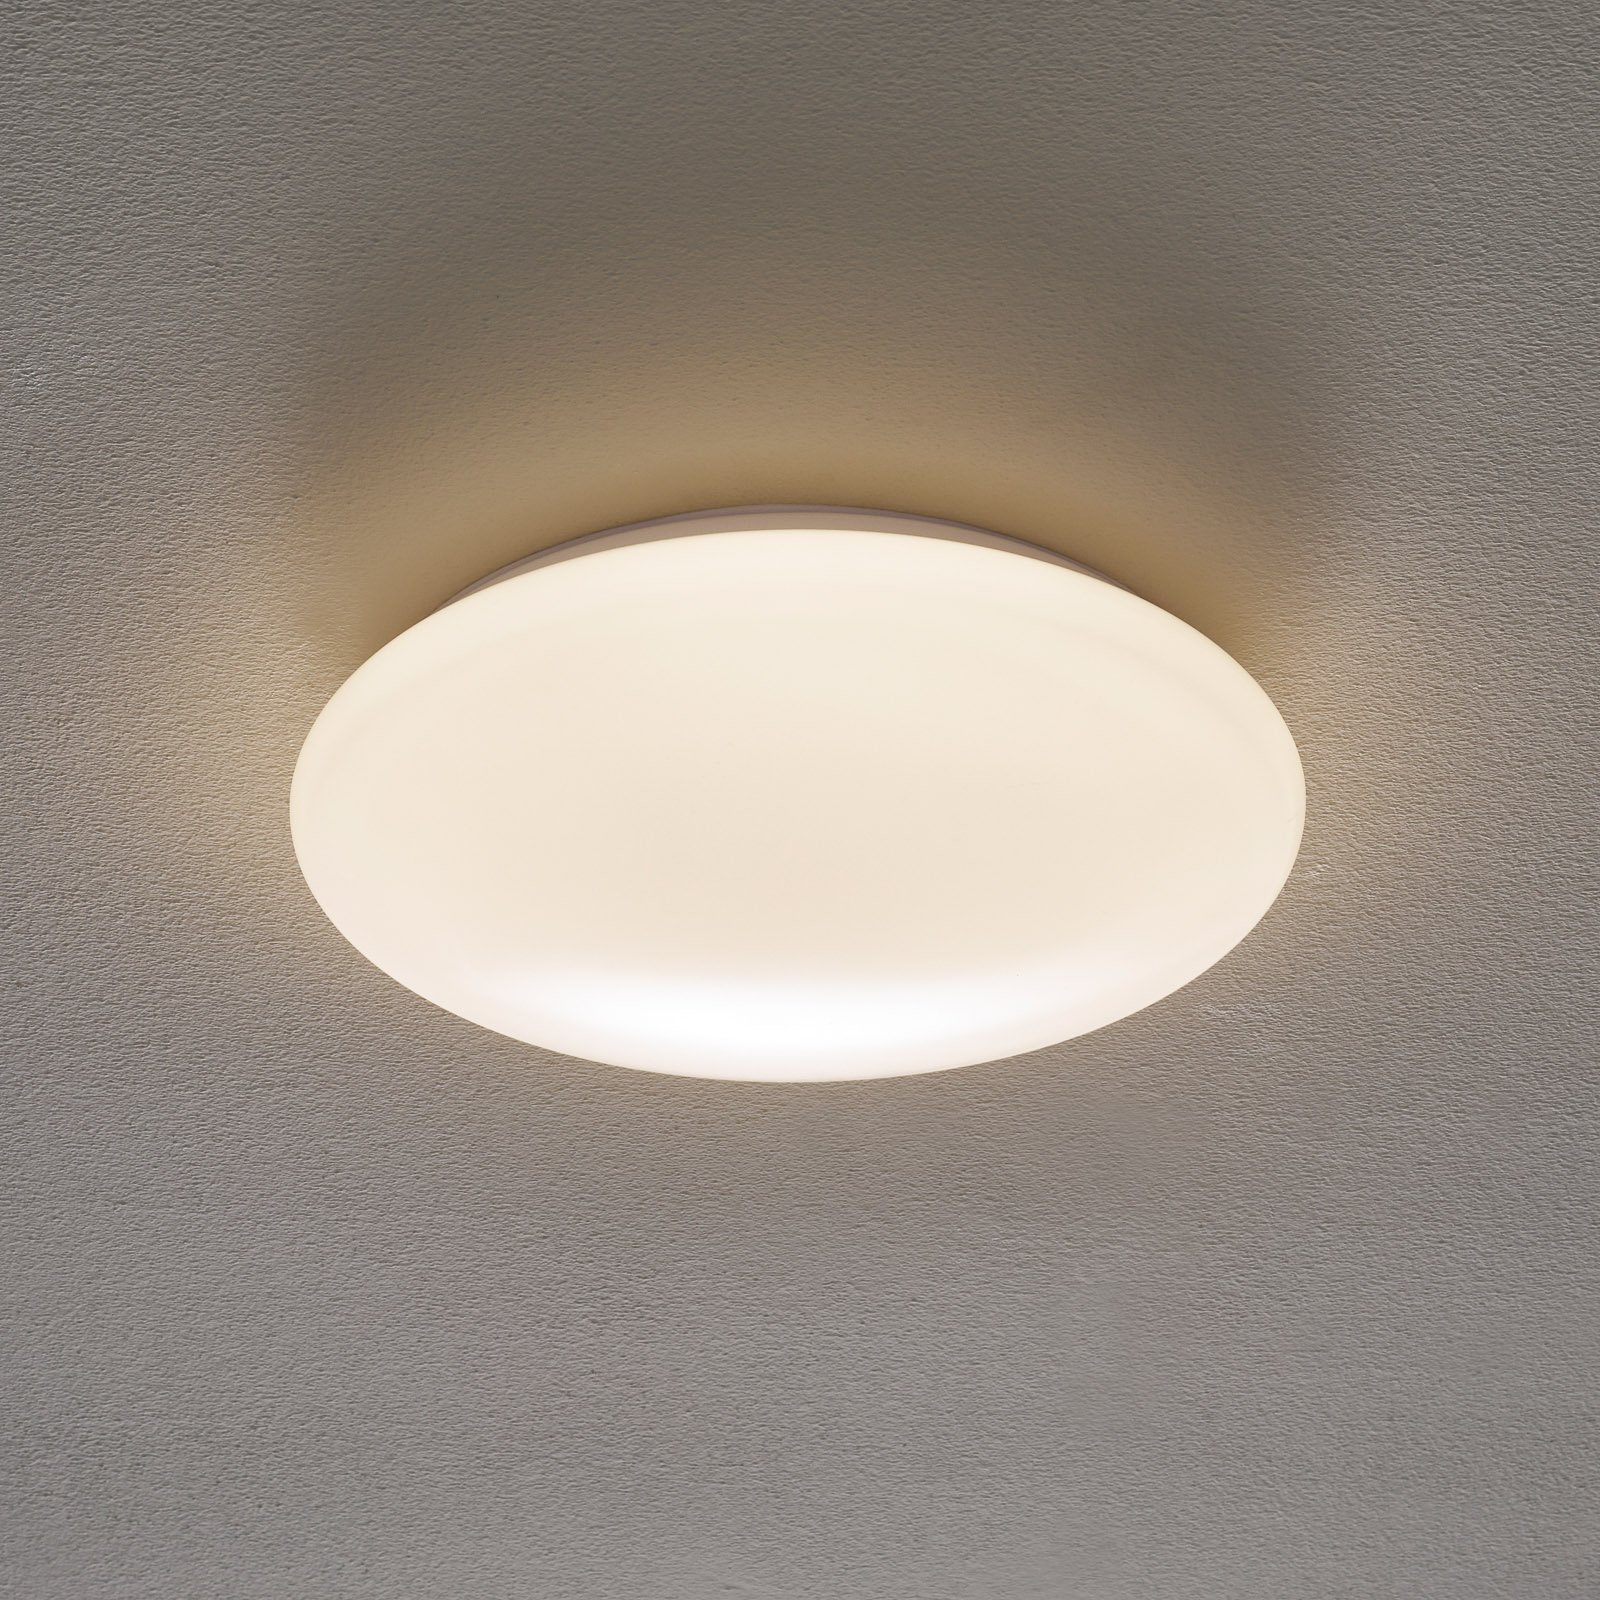 Lampa sufitowa LED Altona Ø 33,7 cm 1.450 lm 3000K